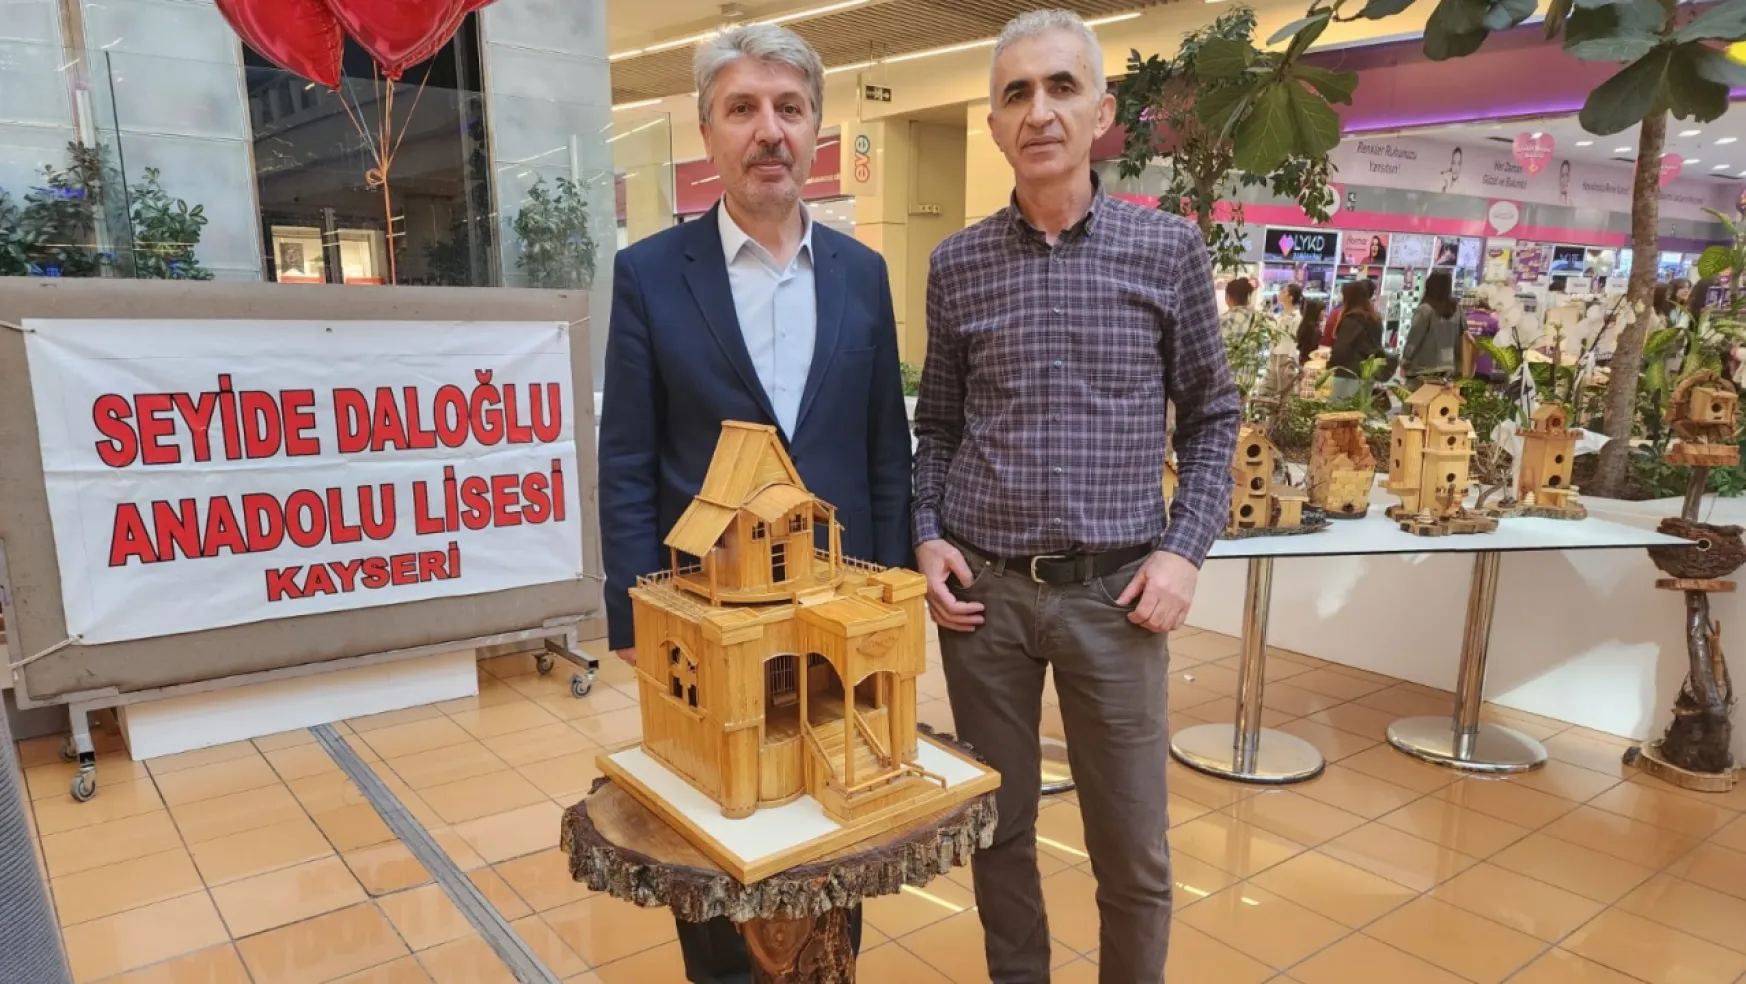 Seyyide Daloğlu Anadolu Lisesi resim ve ahşap kuş evleri sergisi